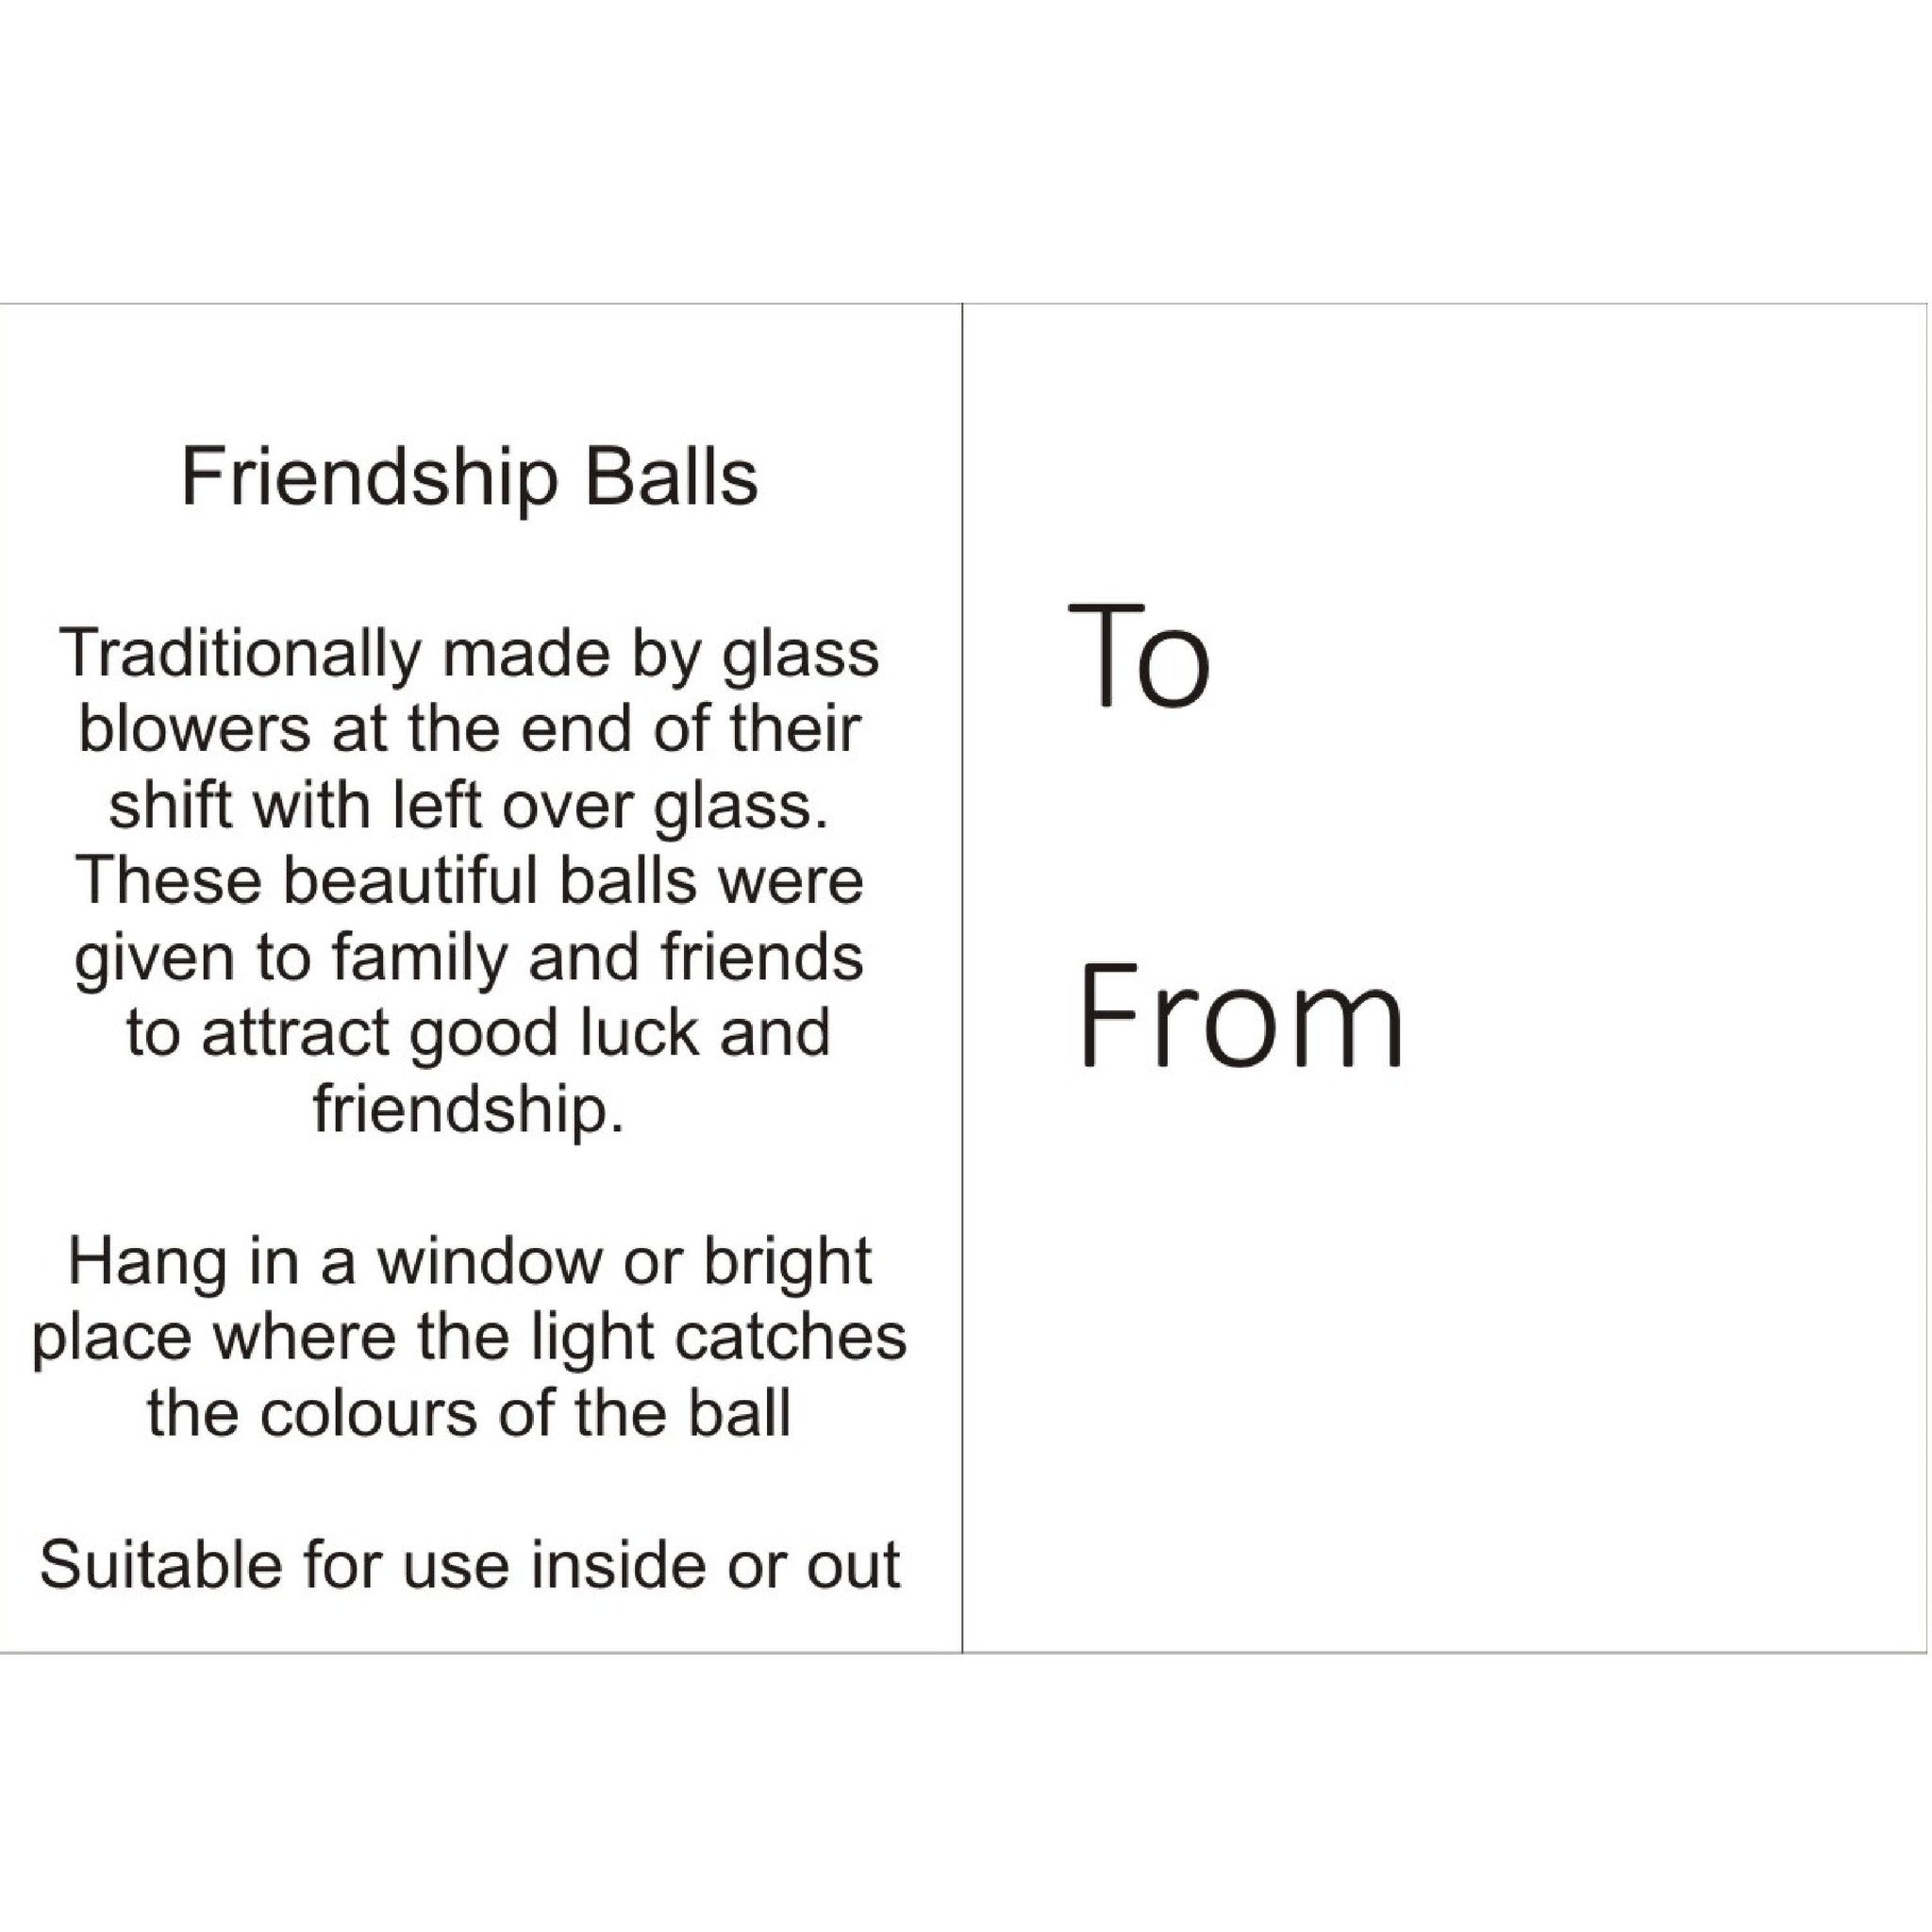 8cm Friendship Ball - Green & Blue - Aspire Art Glass